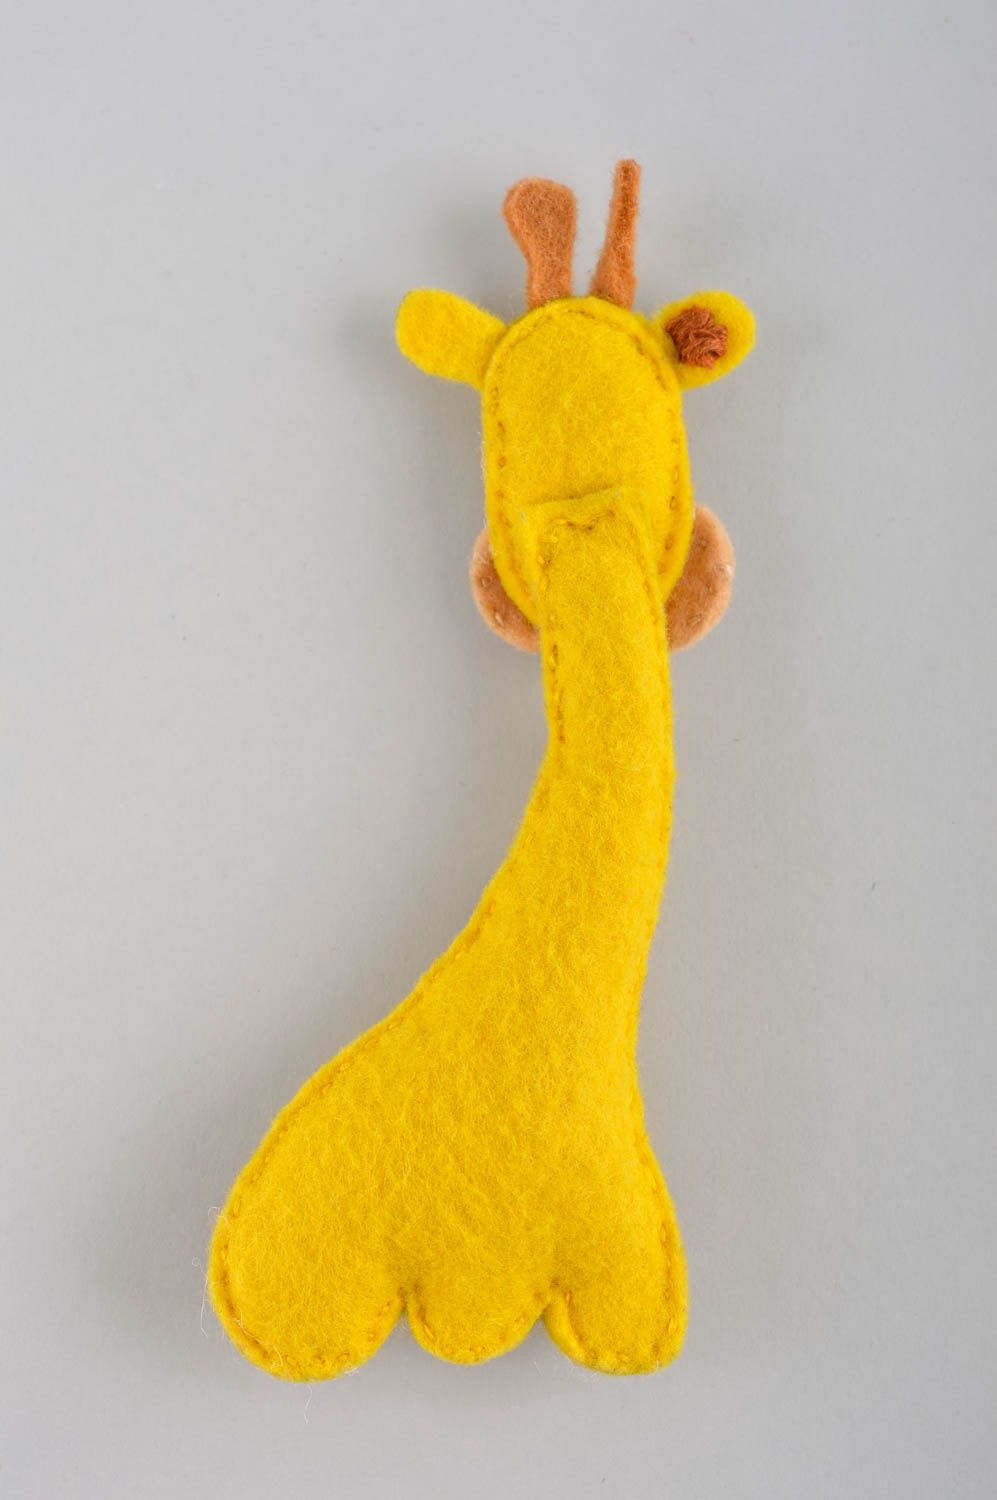 Handmade Filz Tier Giraffe Spielzeug Geschenk Idee aus Filzwolle gelb knuddelig foto 3